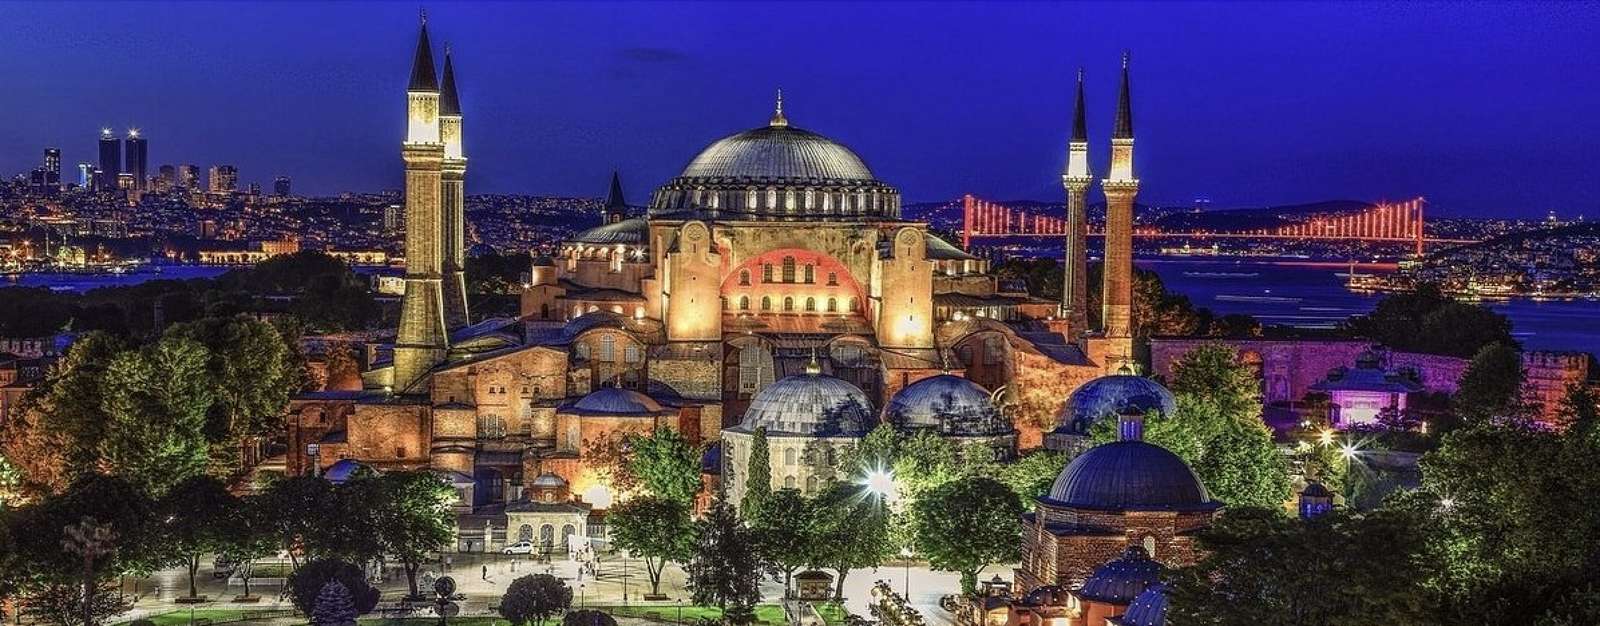 Собор Святой Софии, Турция пазл онлайн из фото